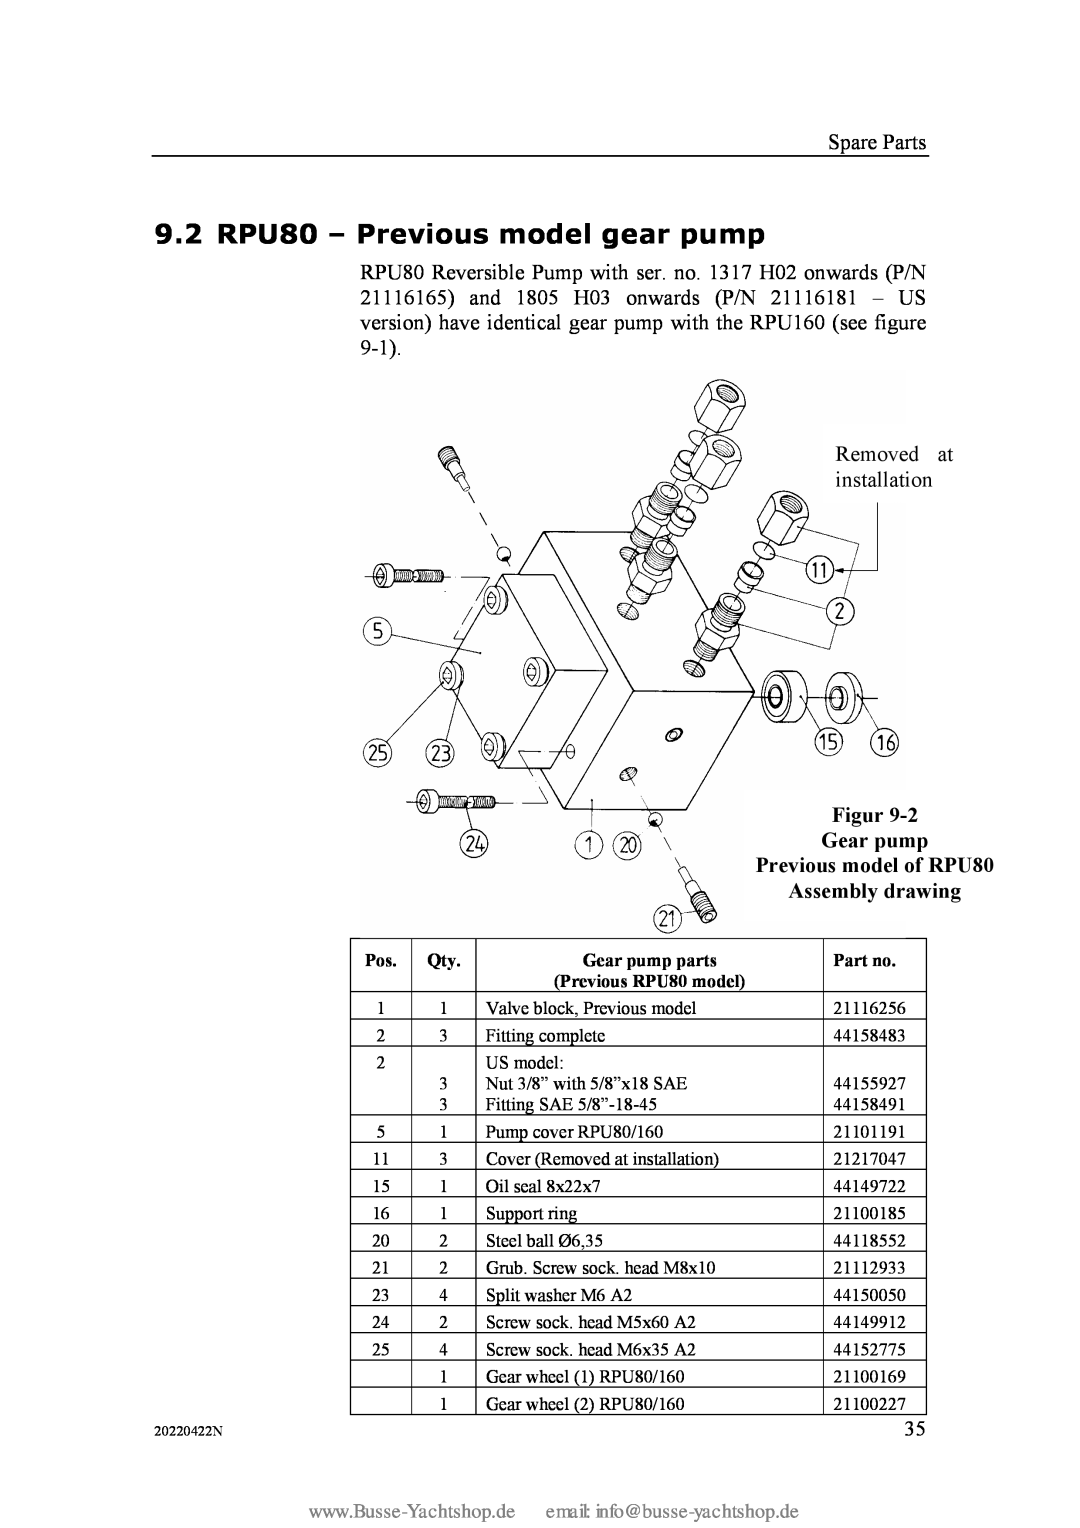 Simran 9.2 RPU80 - Previous model gear pump, Figur, Gear pump, Previous model of RPU80, Assembly drawing, Part no 